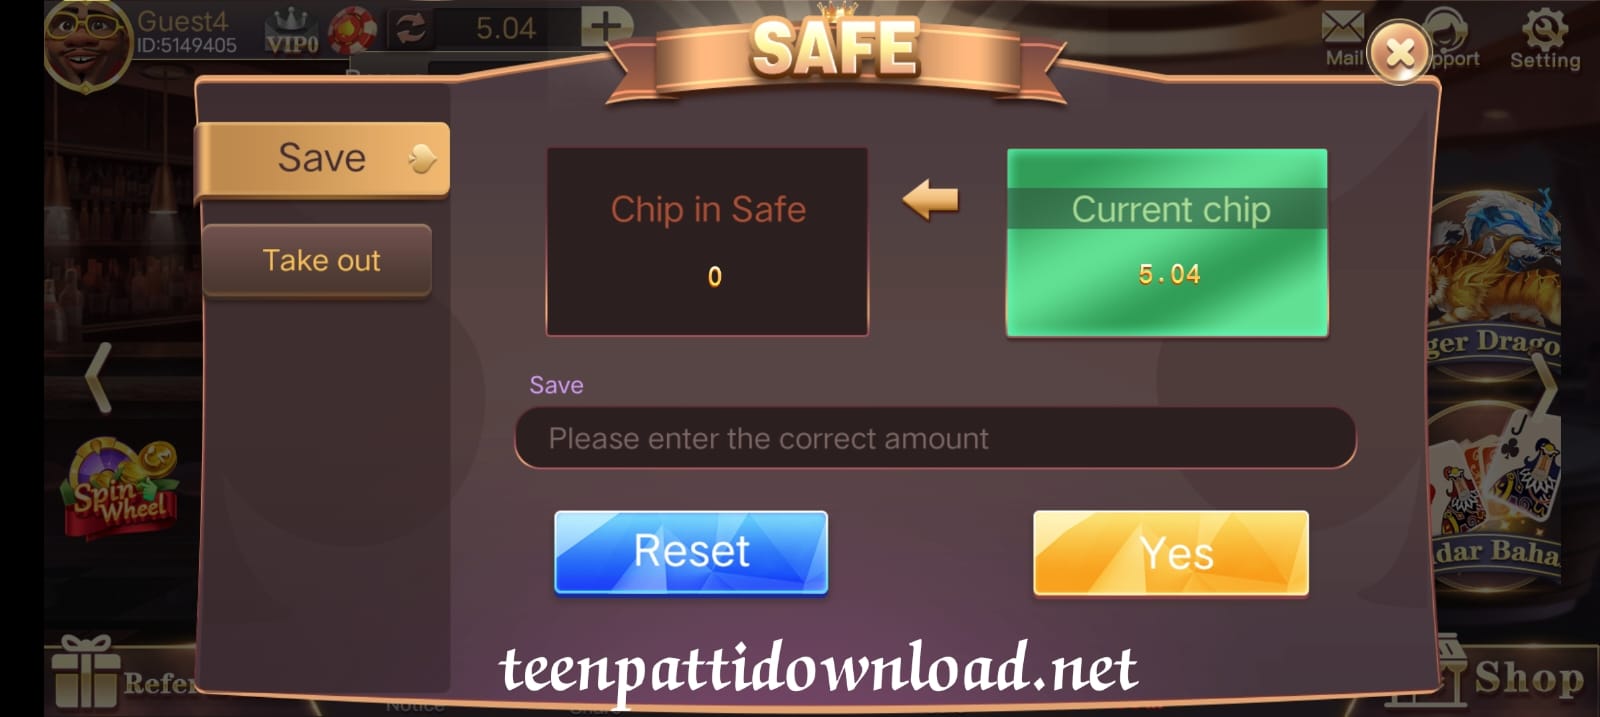 Safe Button Program In 3 Patti Fun App